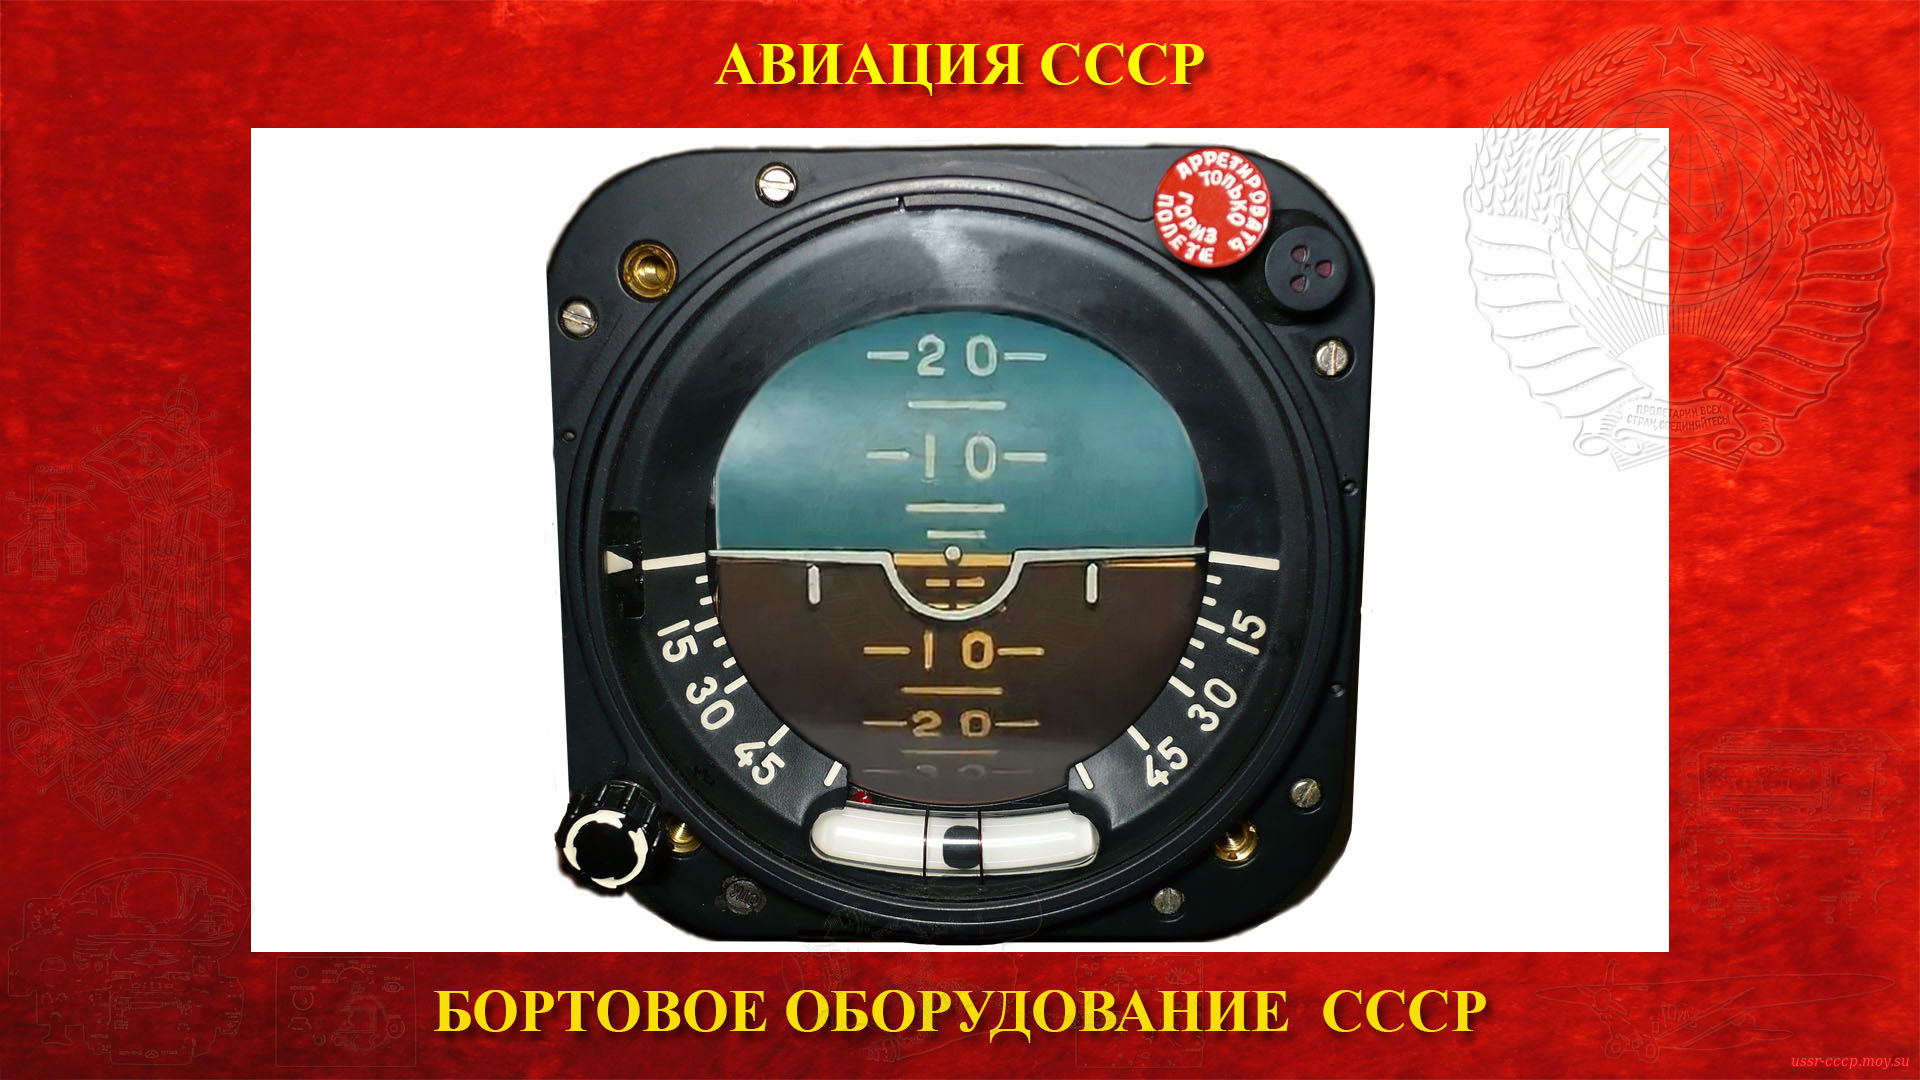 АГД-1 — Авиагоризонт — Гироскопический прибор СССР